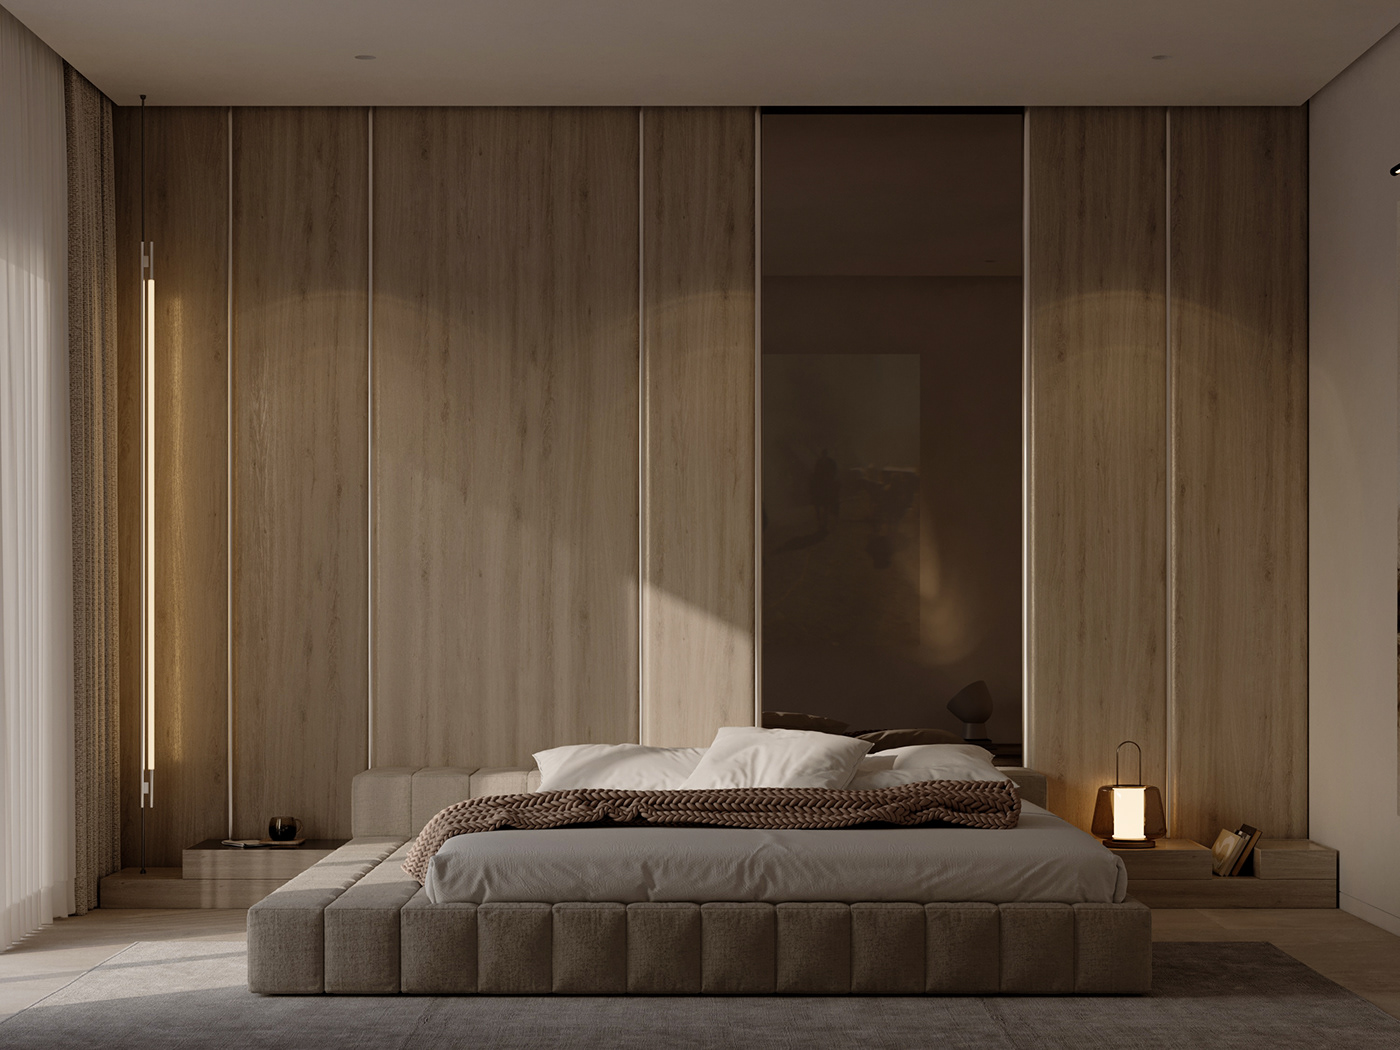 bedroom bedroom design bedroomdesign Bedroom interior interior design  Interior interiordesign master bedroom Studia54 tolko